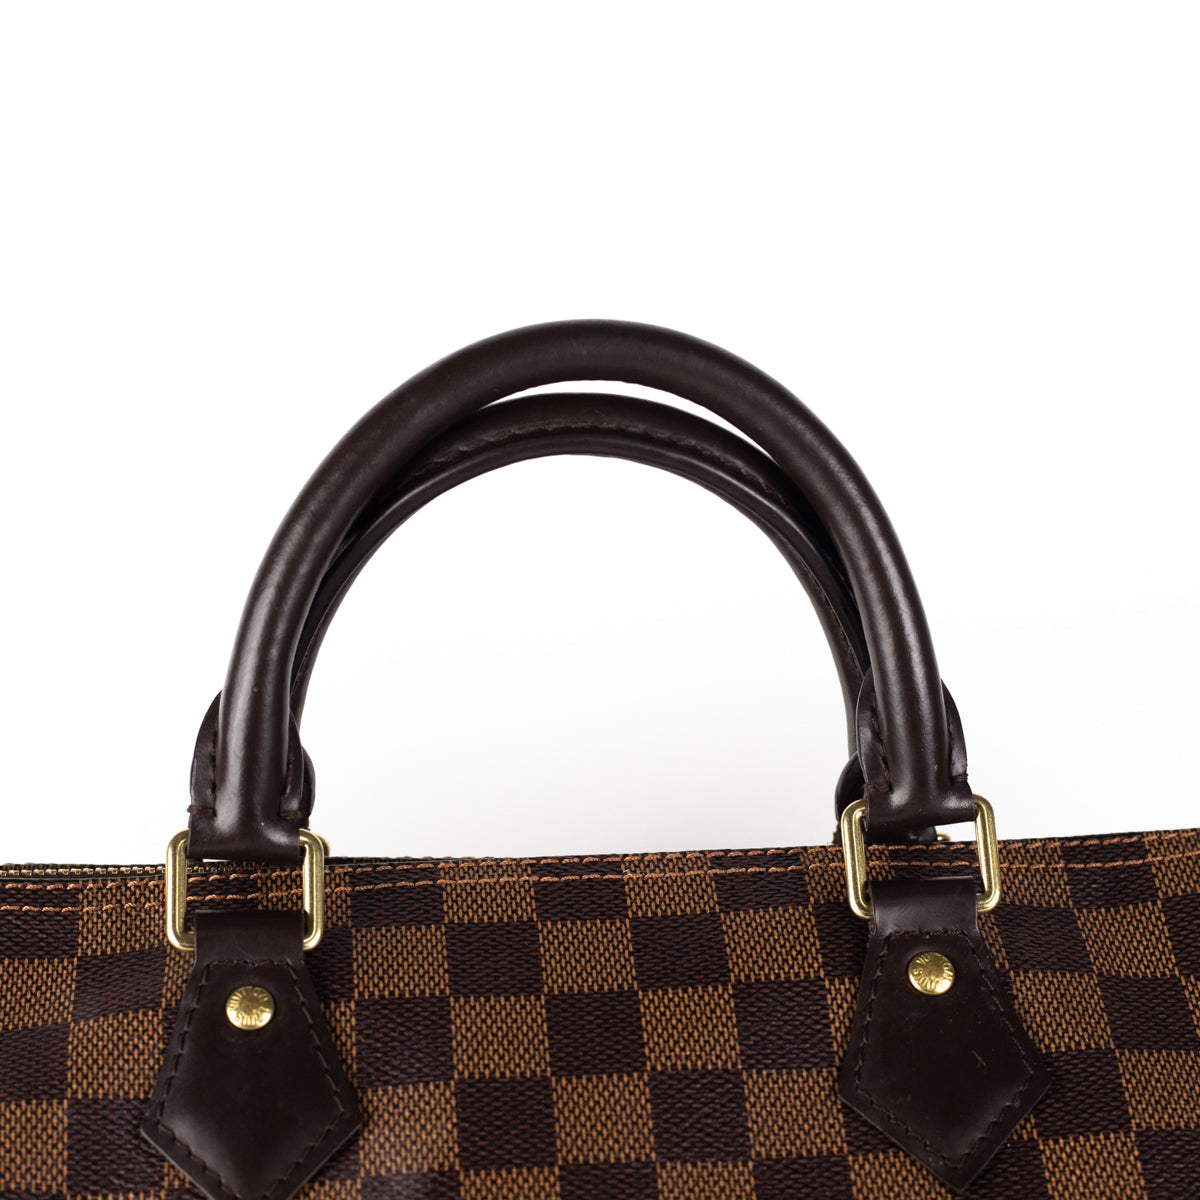 Louis Vuitton 2010 pre-owned Damier Ebène Speedy 30 Handbag - Farfetch